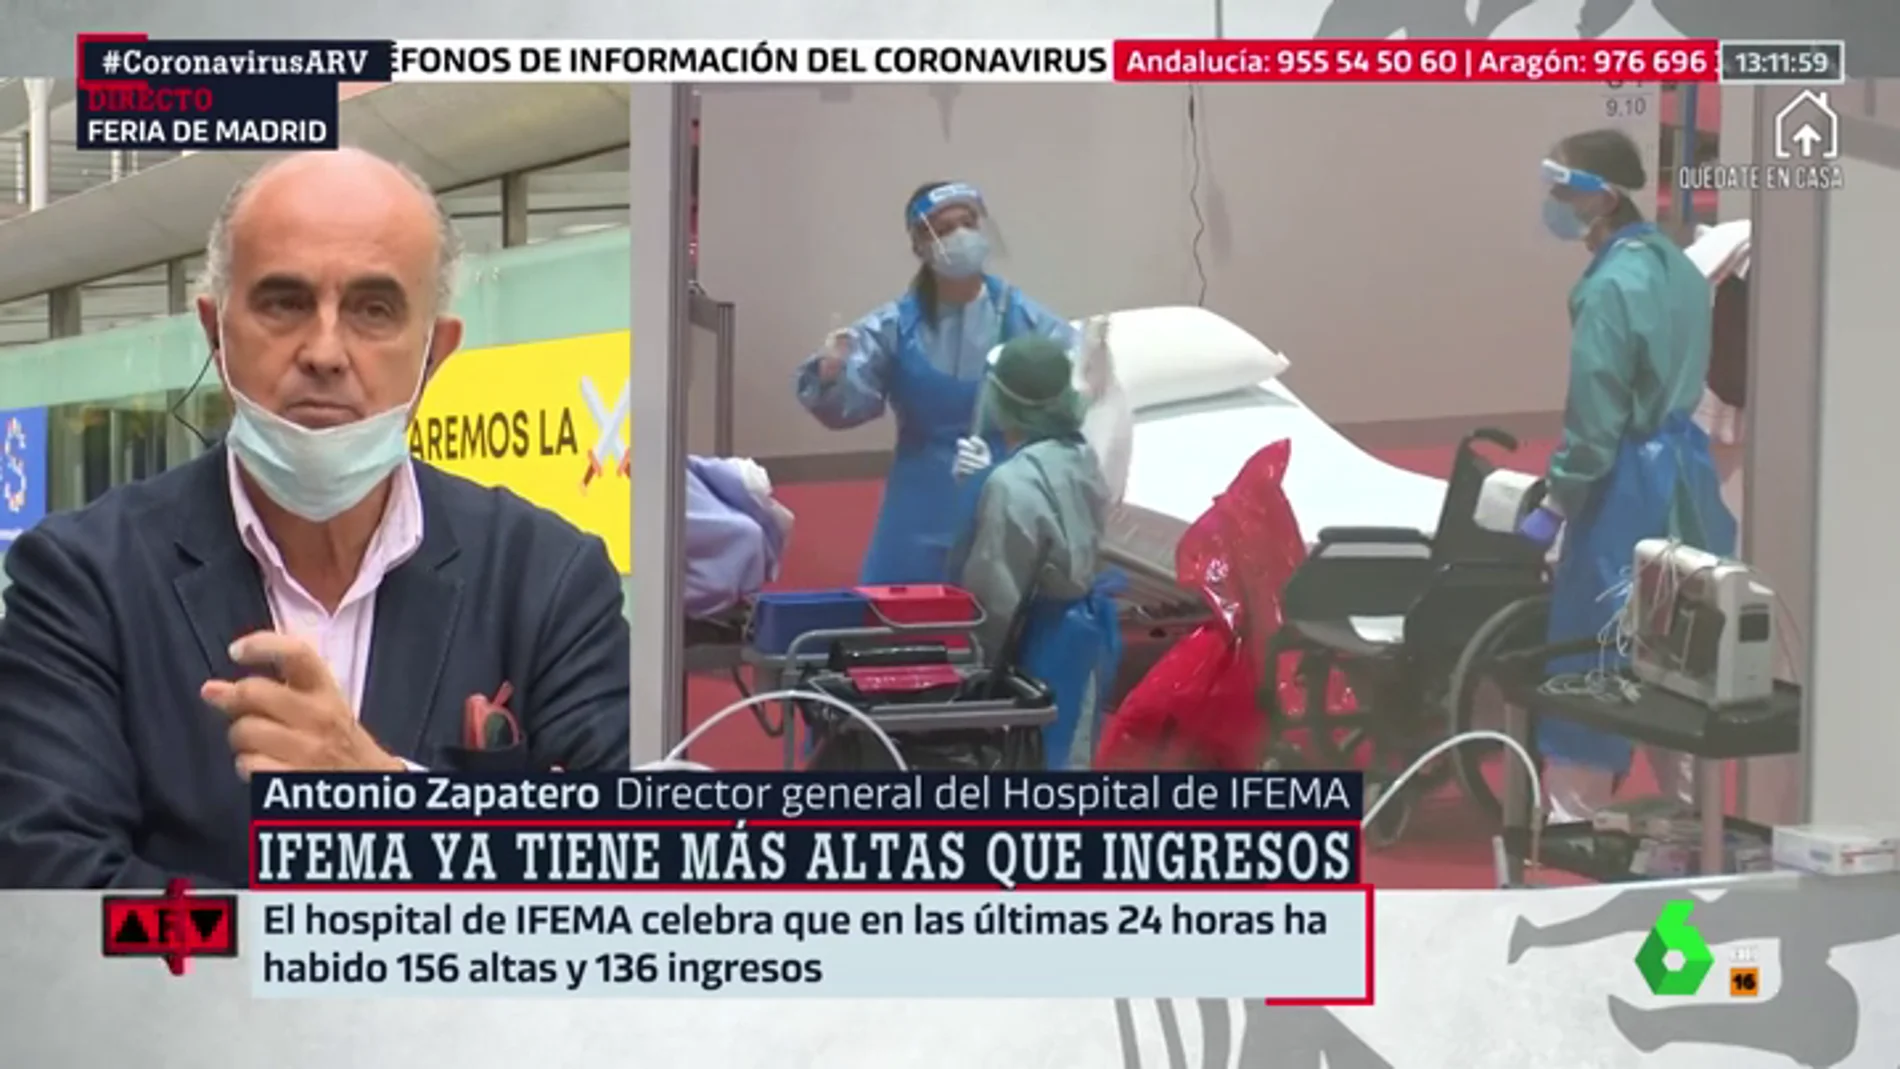 Antonio Zapatero, director del hospital de Ifema: "Hay una tendencia de 600 altas más que ingresos por coronavirus en Madrid"